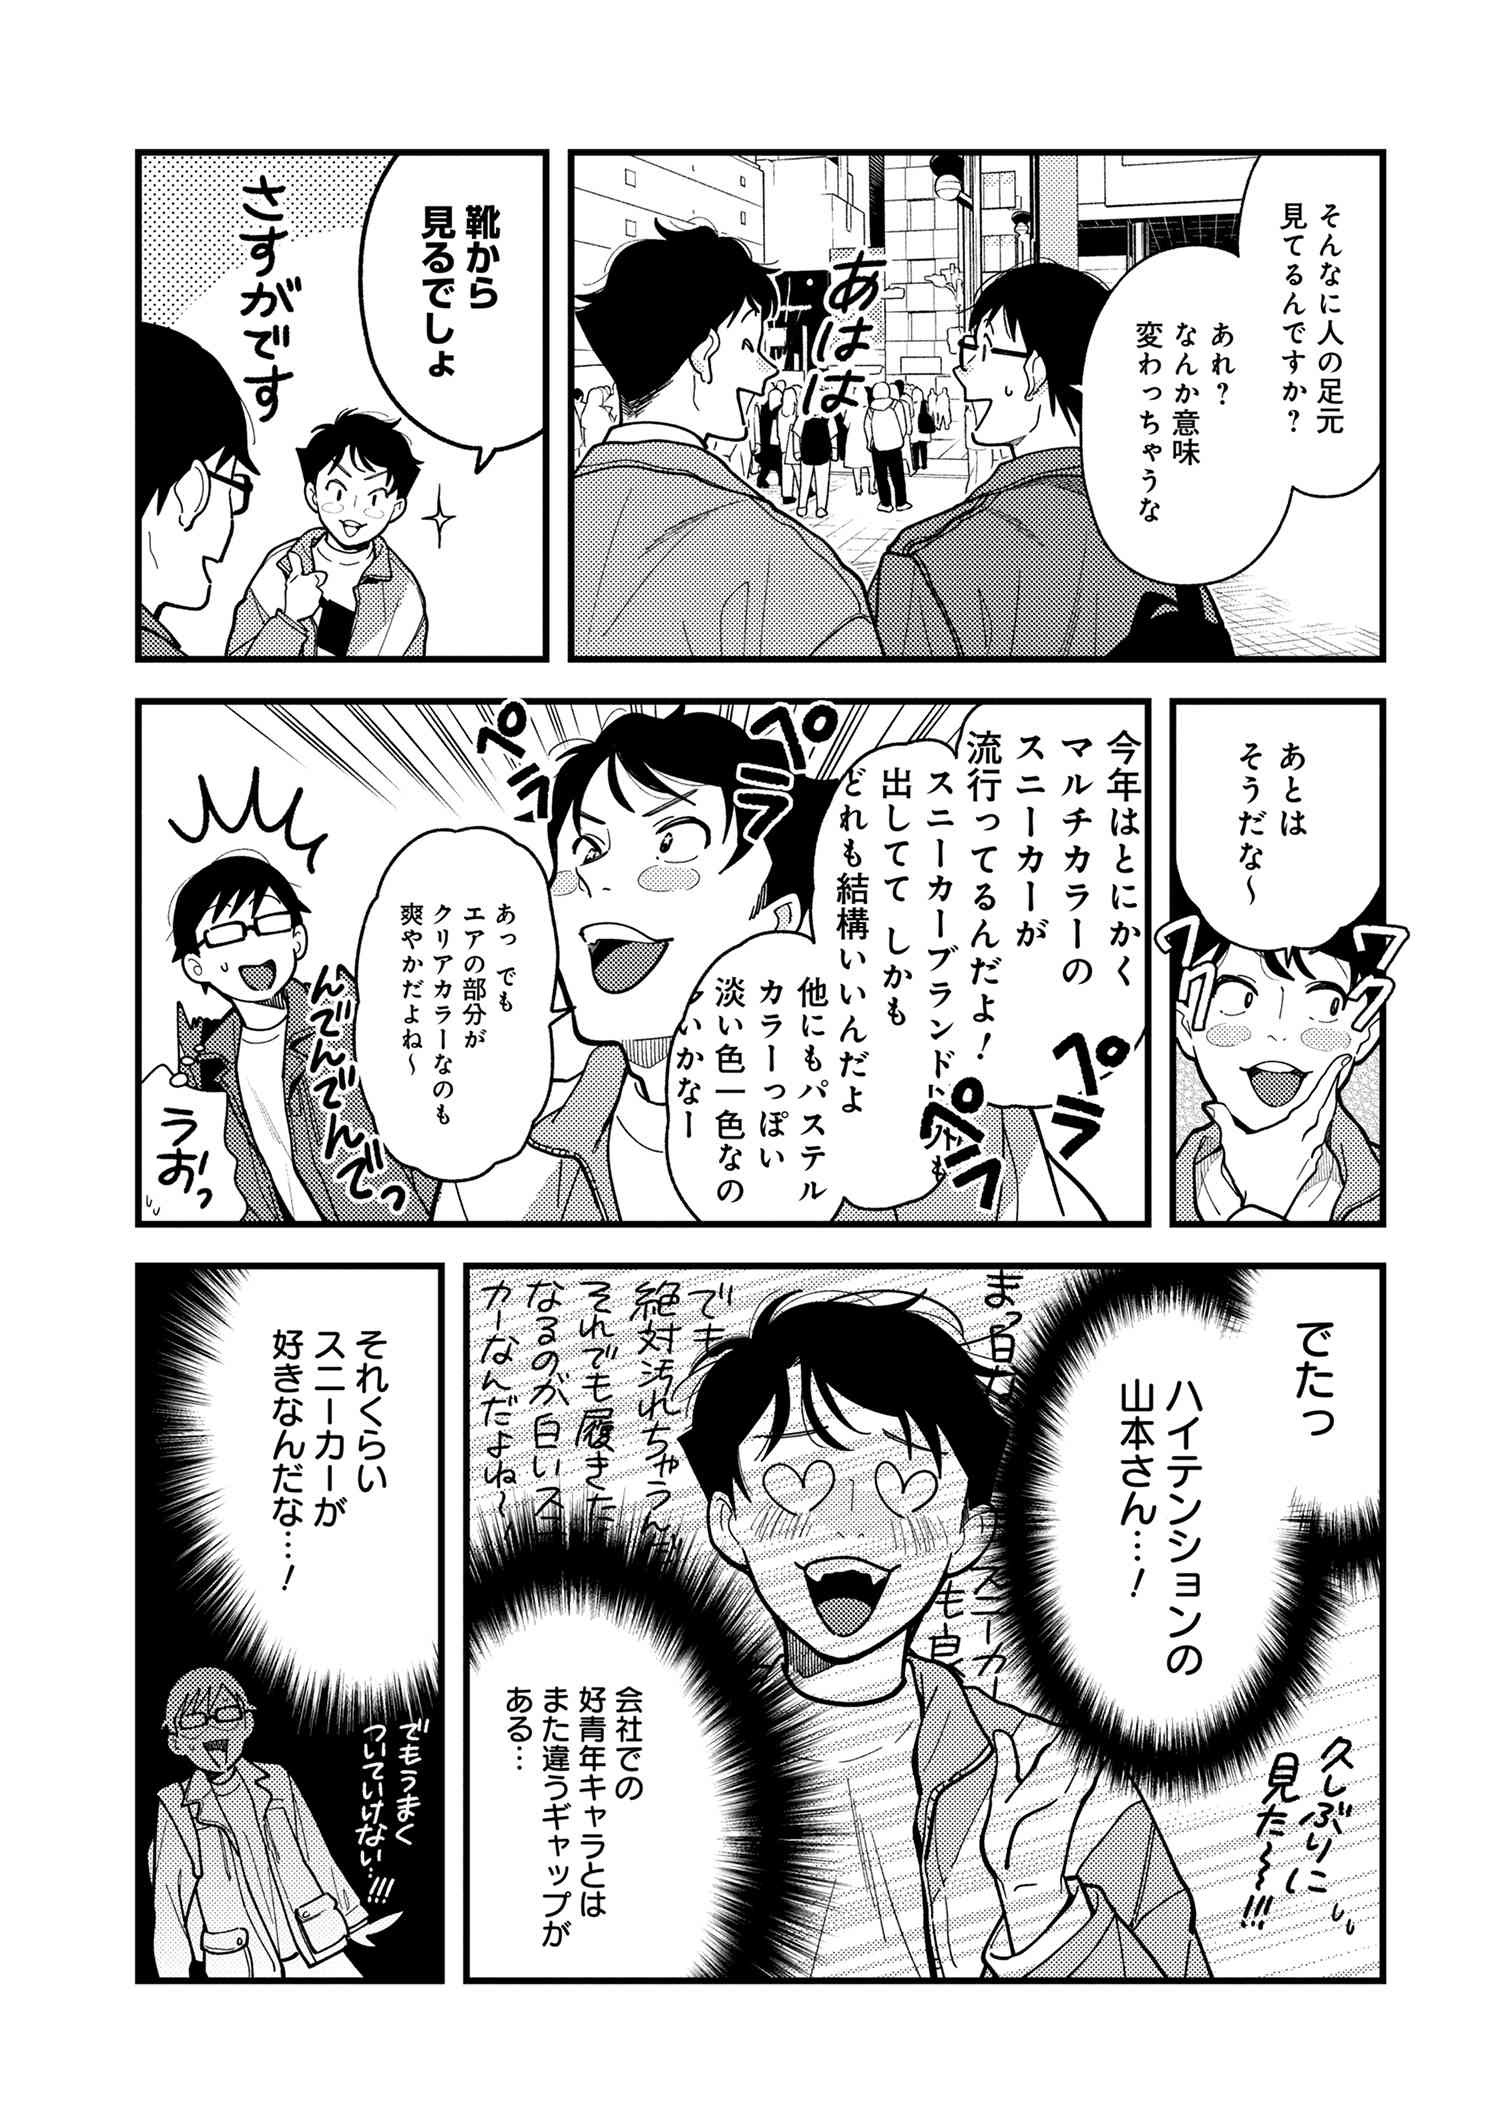 Fuku o Kiru Nara Konna Fuu ni - 服を着るならこんなふうに - Chapter 68 - Page 5